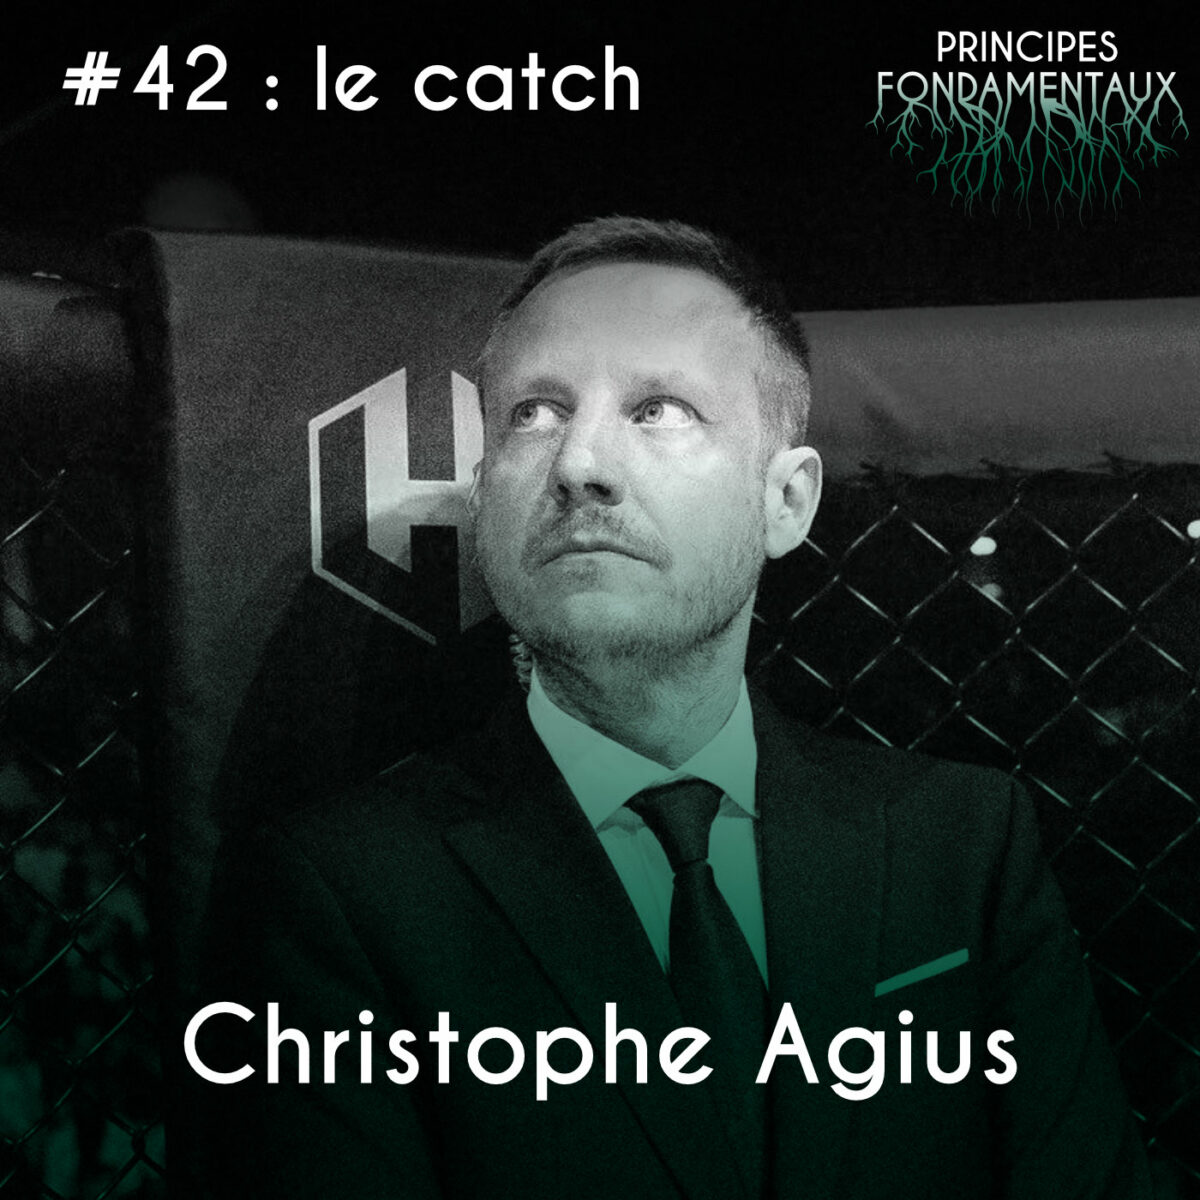 Couverture Podcast #42 : Christophe Agius - le Catch